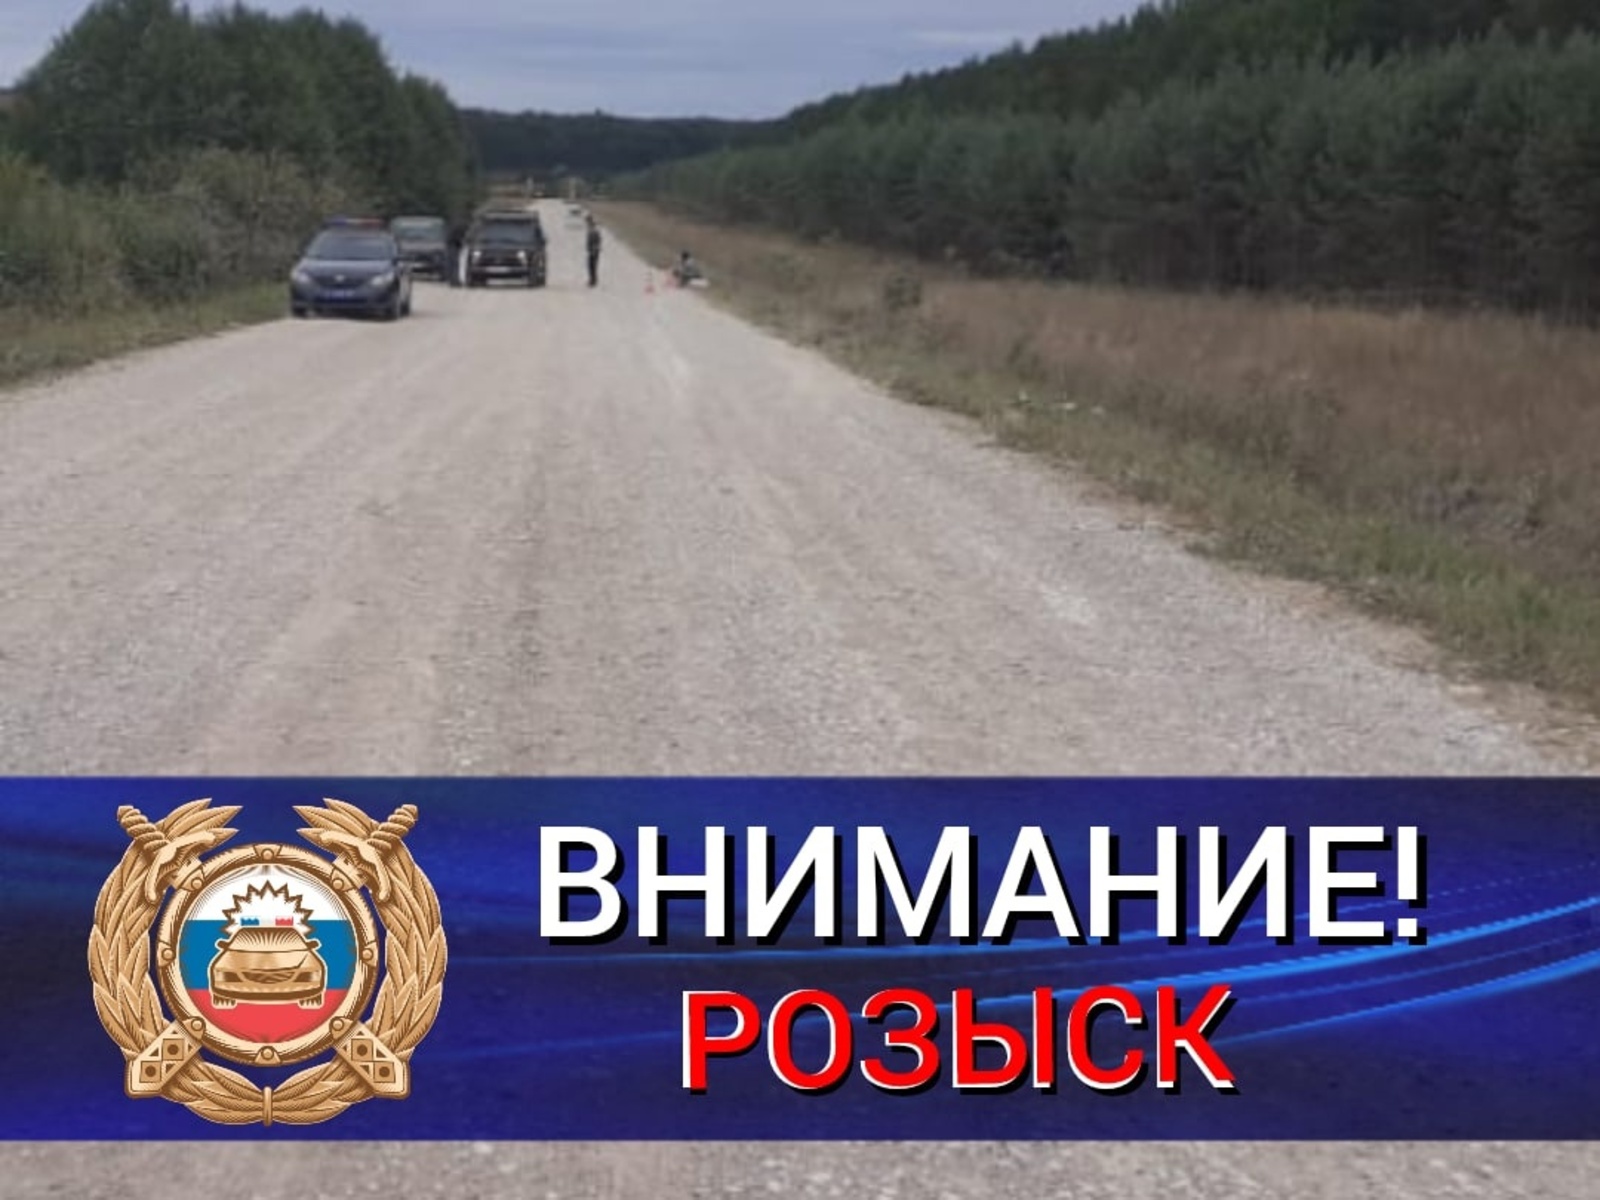 Сегодня в Мишкинском районе зарегистрировано ДТП с погибшим.